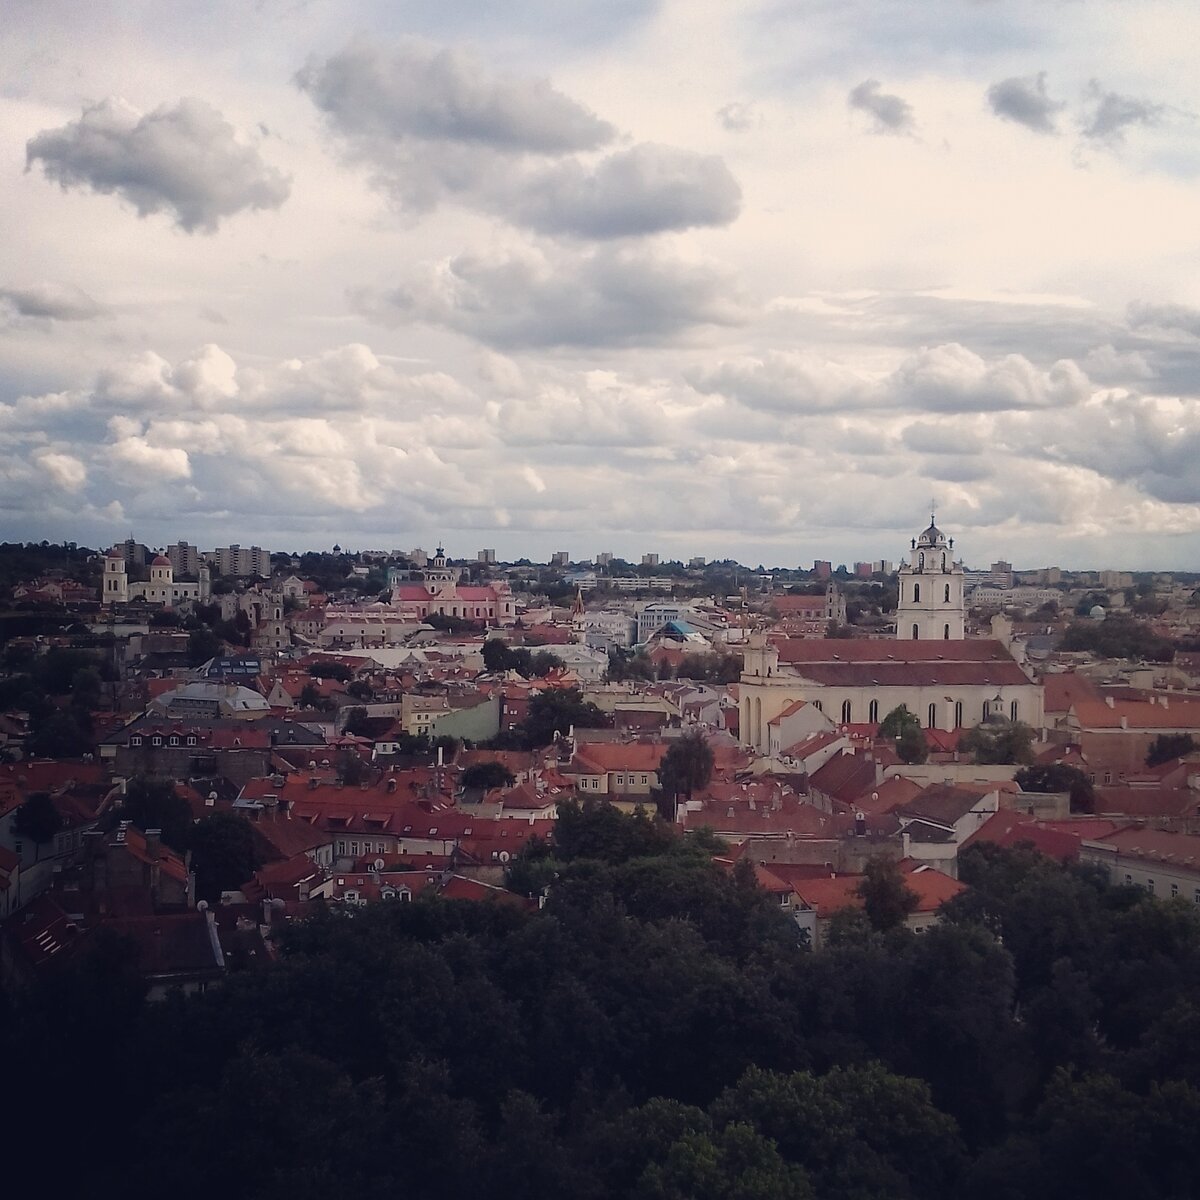 Вильнюс - это столица Литвы и самое посещаемое туристами место. Старый город Вильнюса считается самым большим в Европе и включен в список Всемирного наследия ЮНЕСКО.